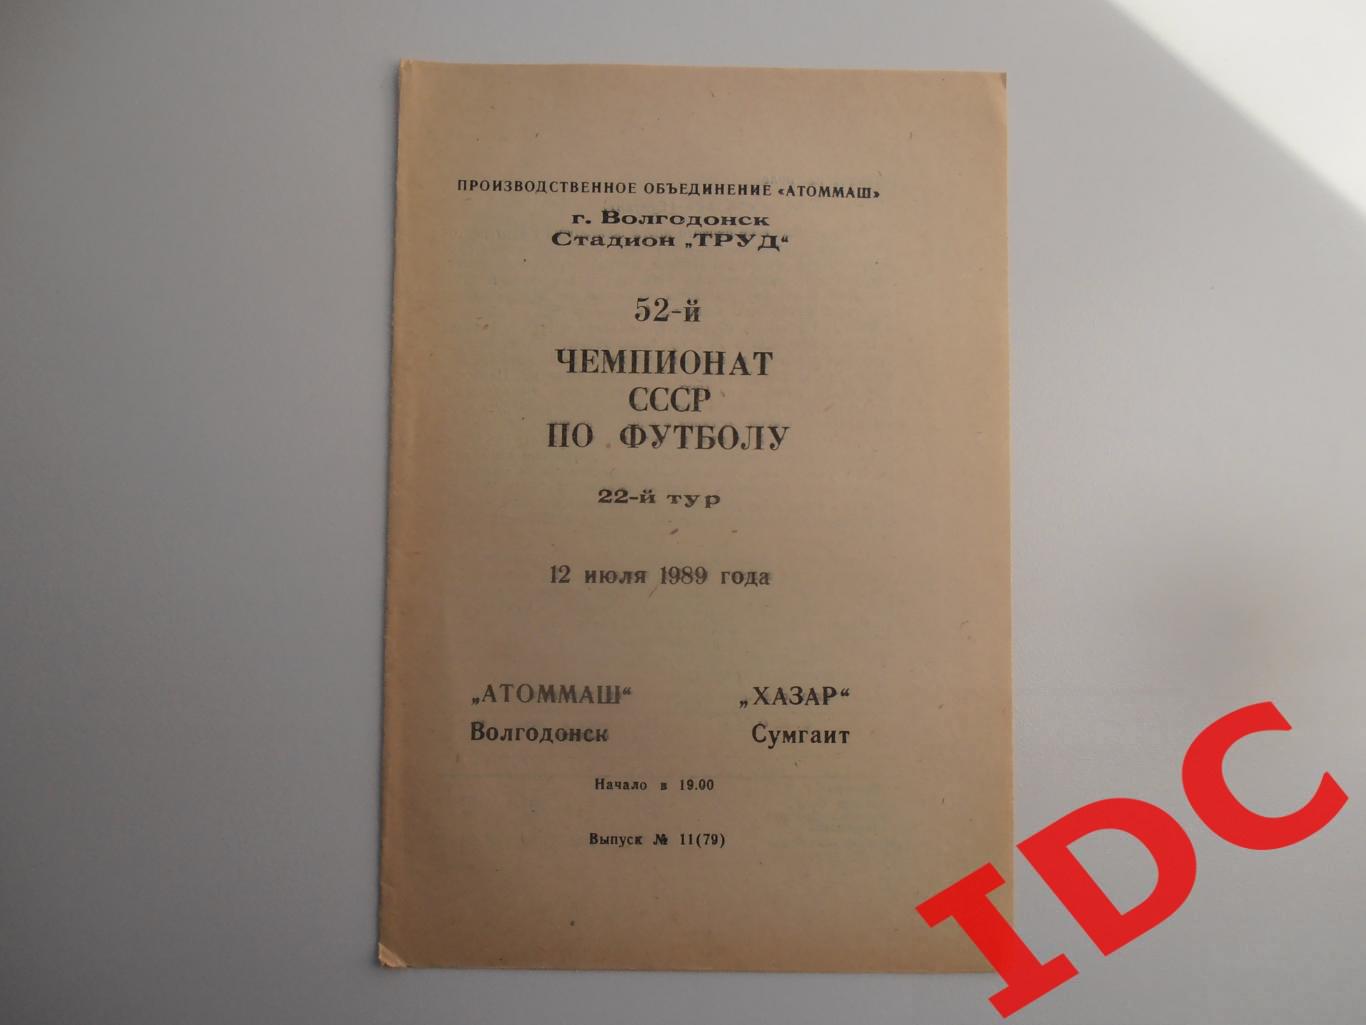 Атоммаш Волгодонск-Хазар Сумгаит 12 июля 1989